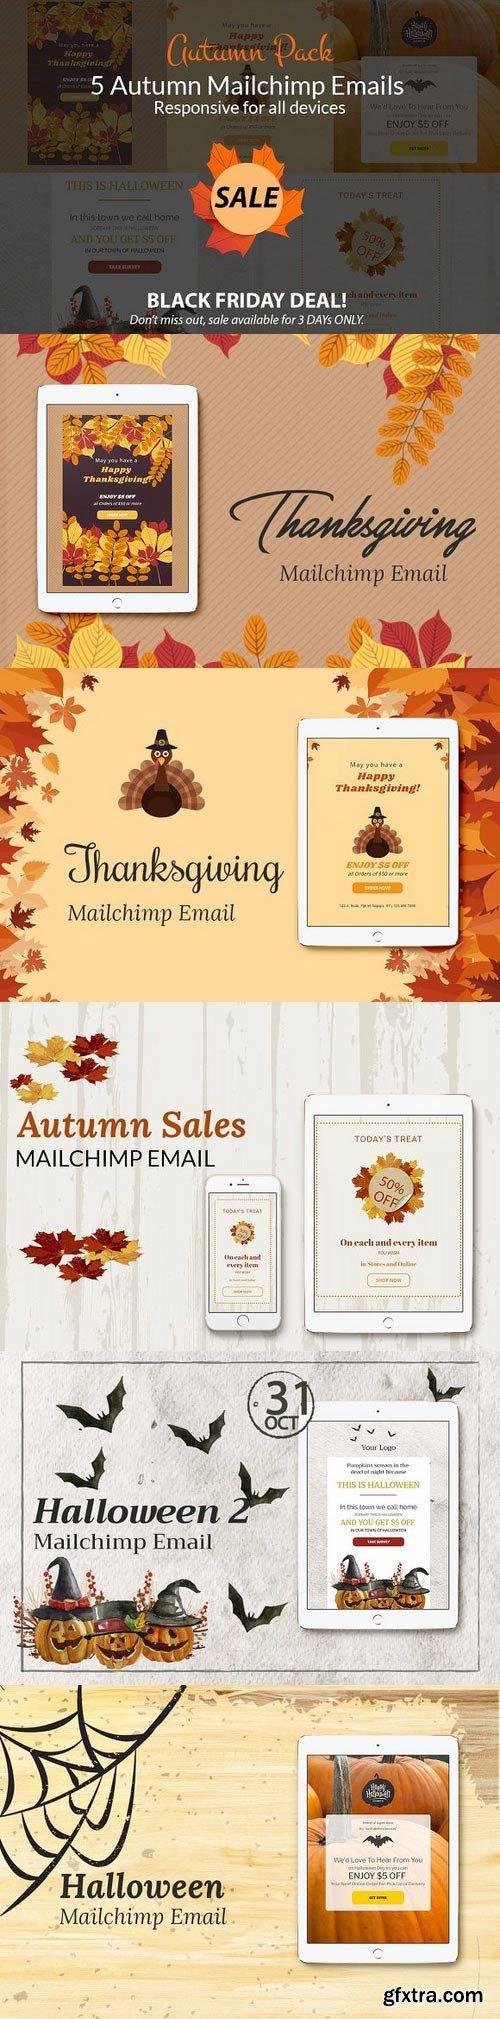 CM - Autumn Sales (mailchimp emails) 1070716